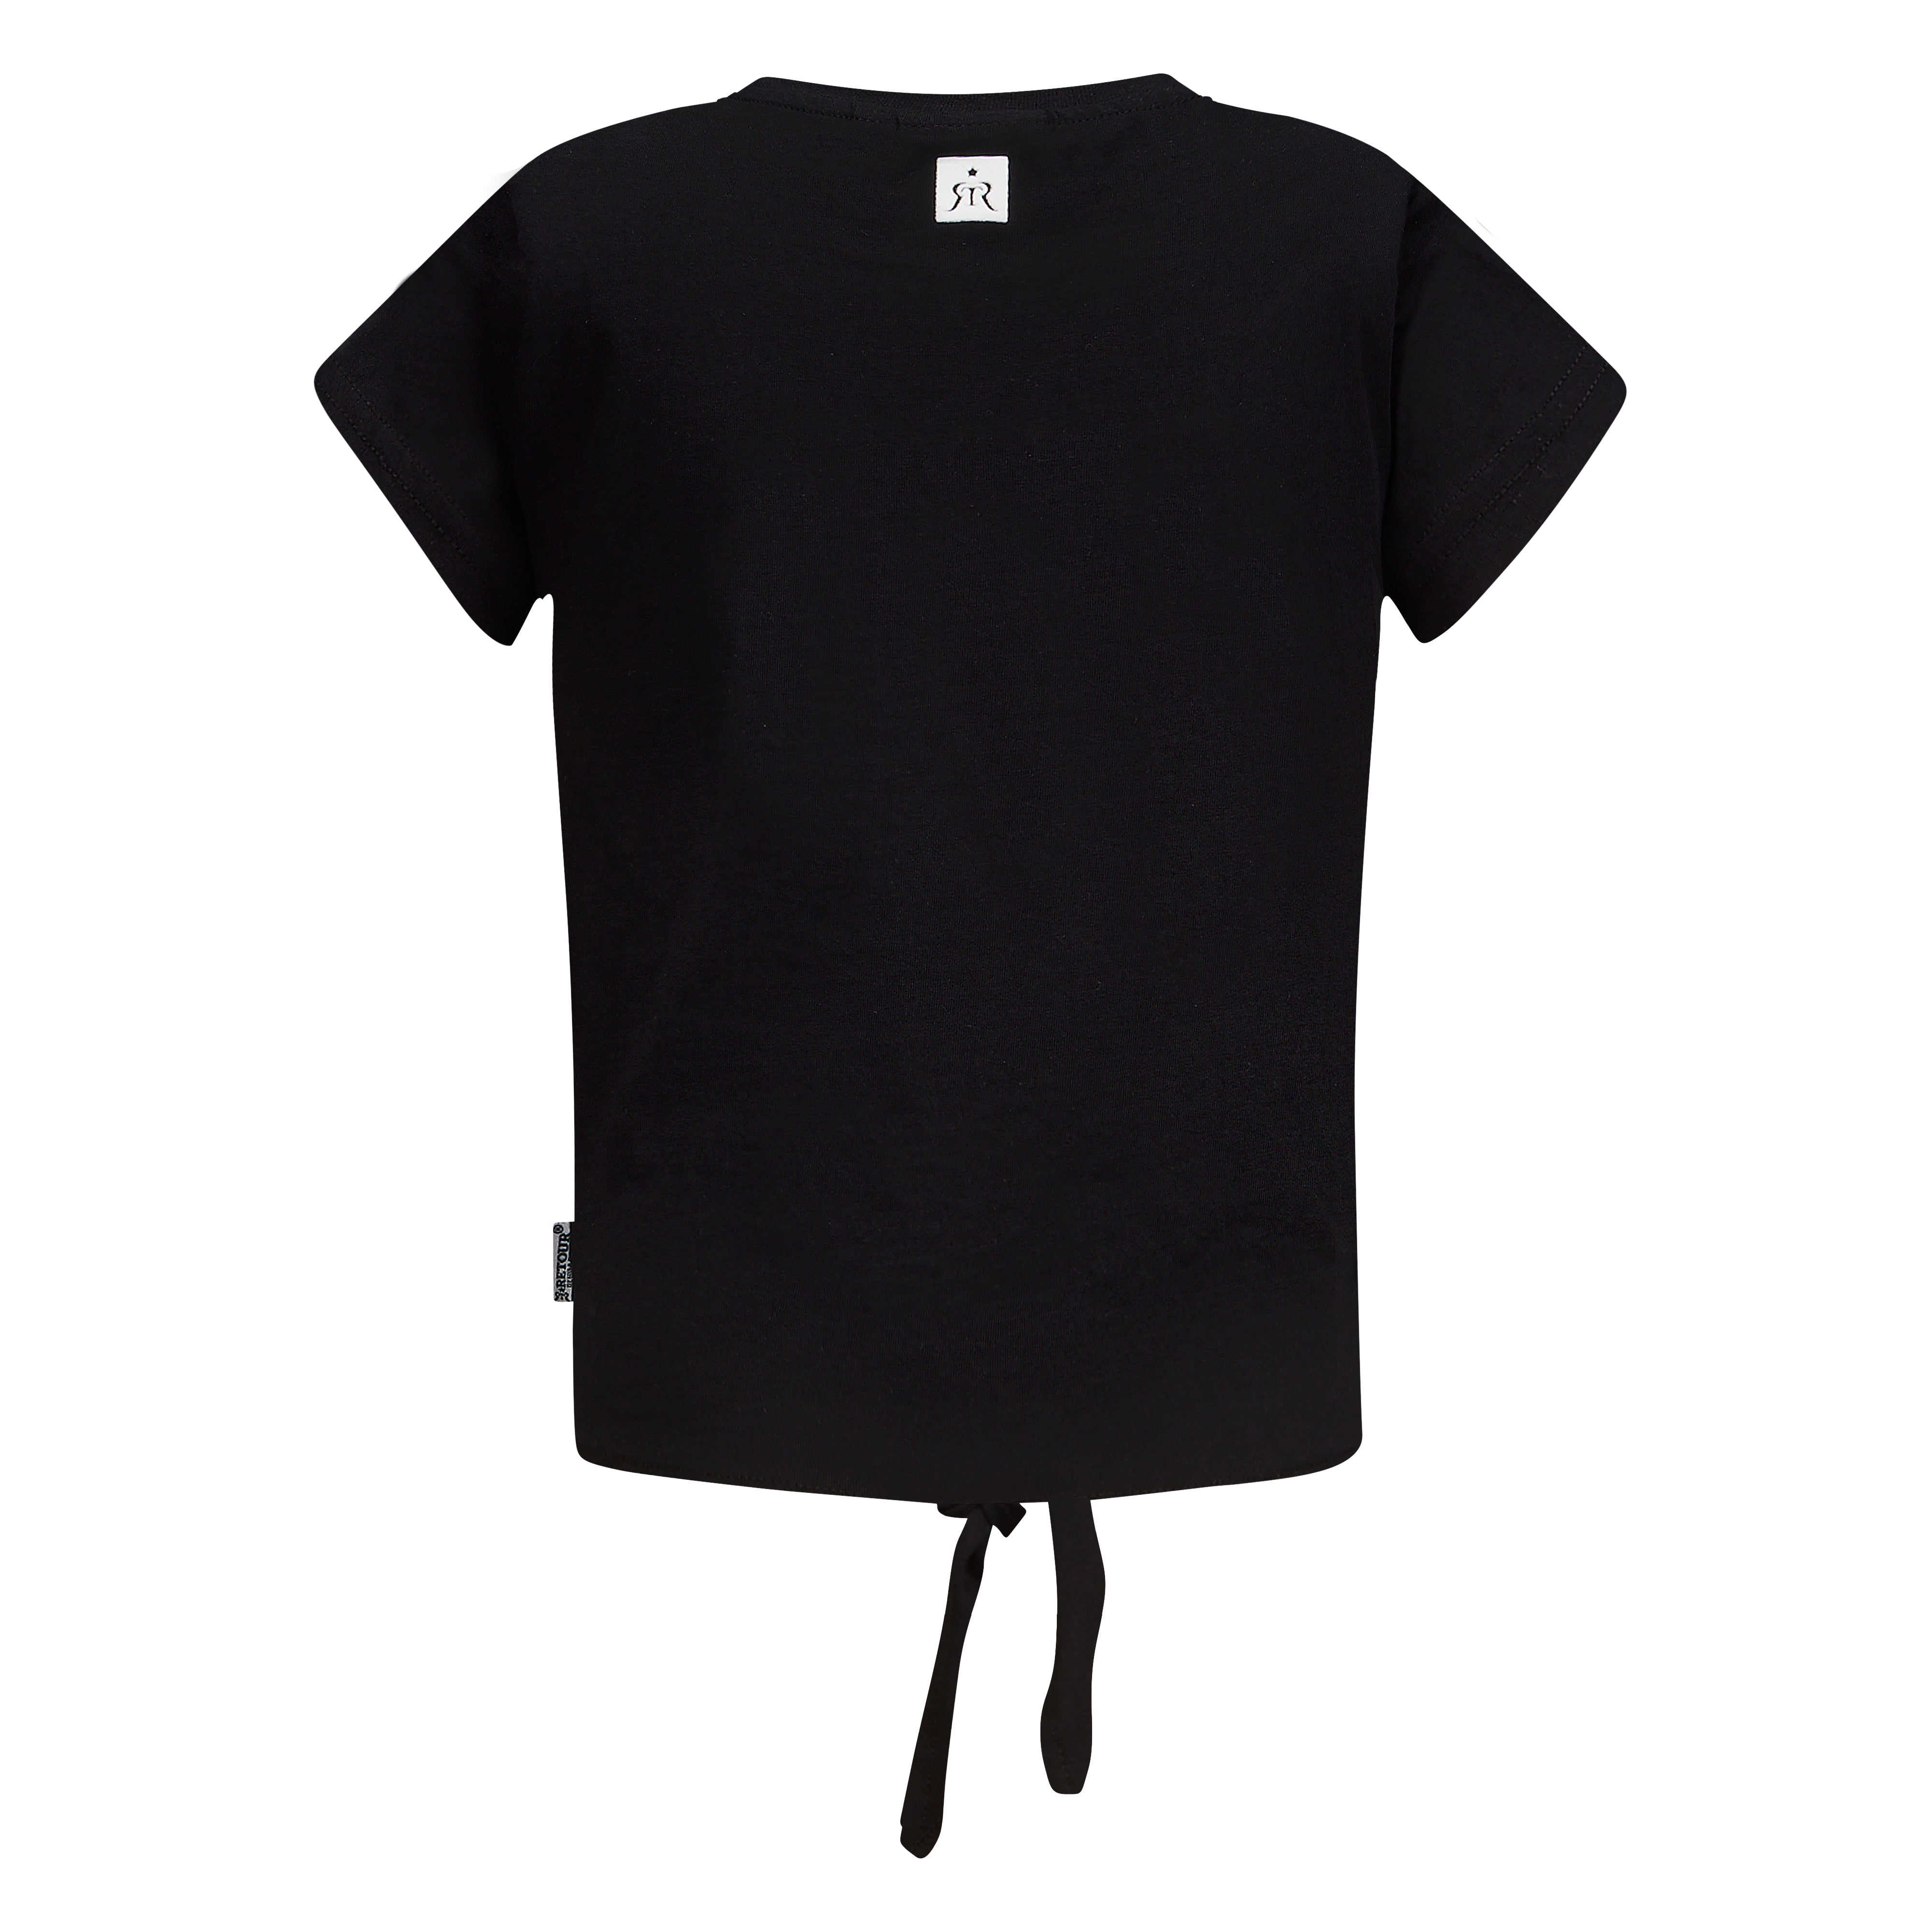 Meisjes T-Shirt Monica van Retour in de kleur black in maat 158-164.